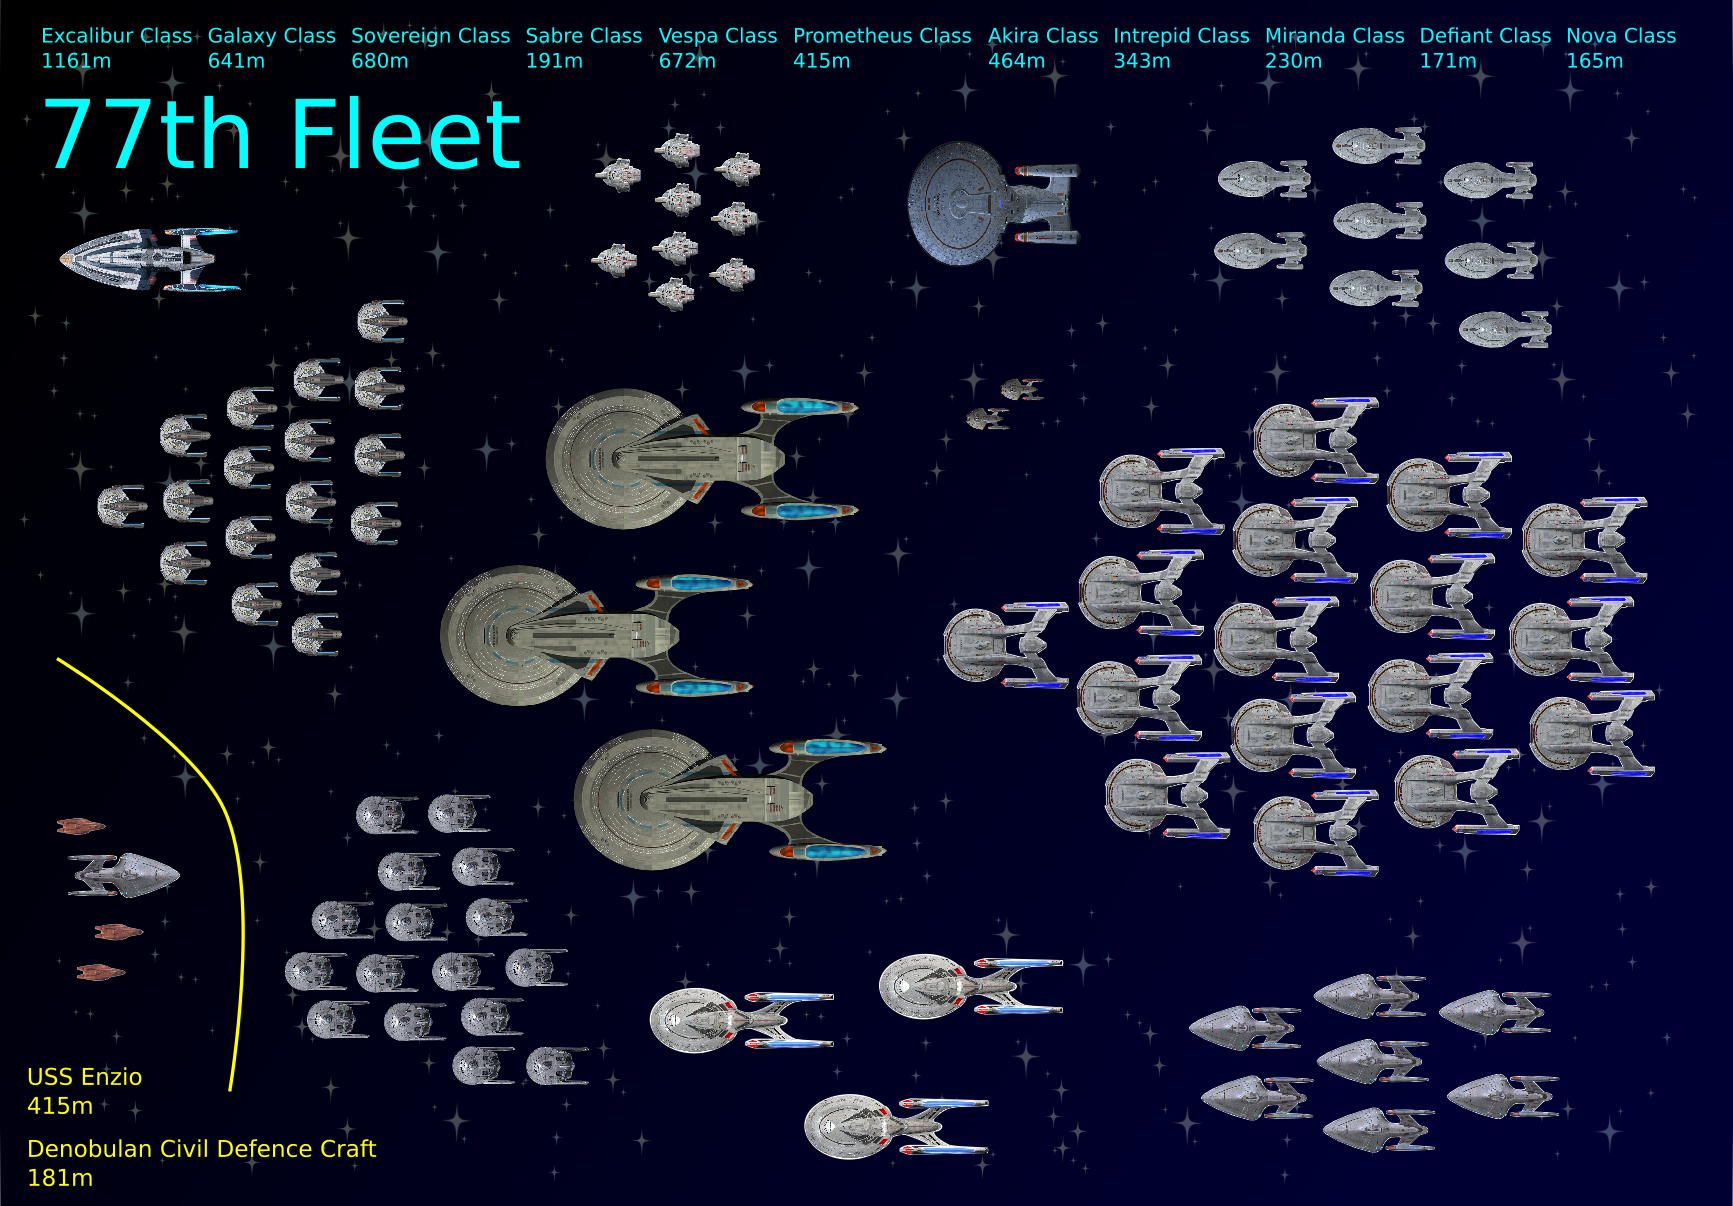 <77th Fleet Display>